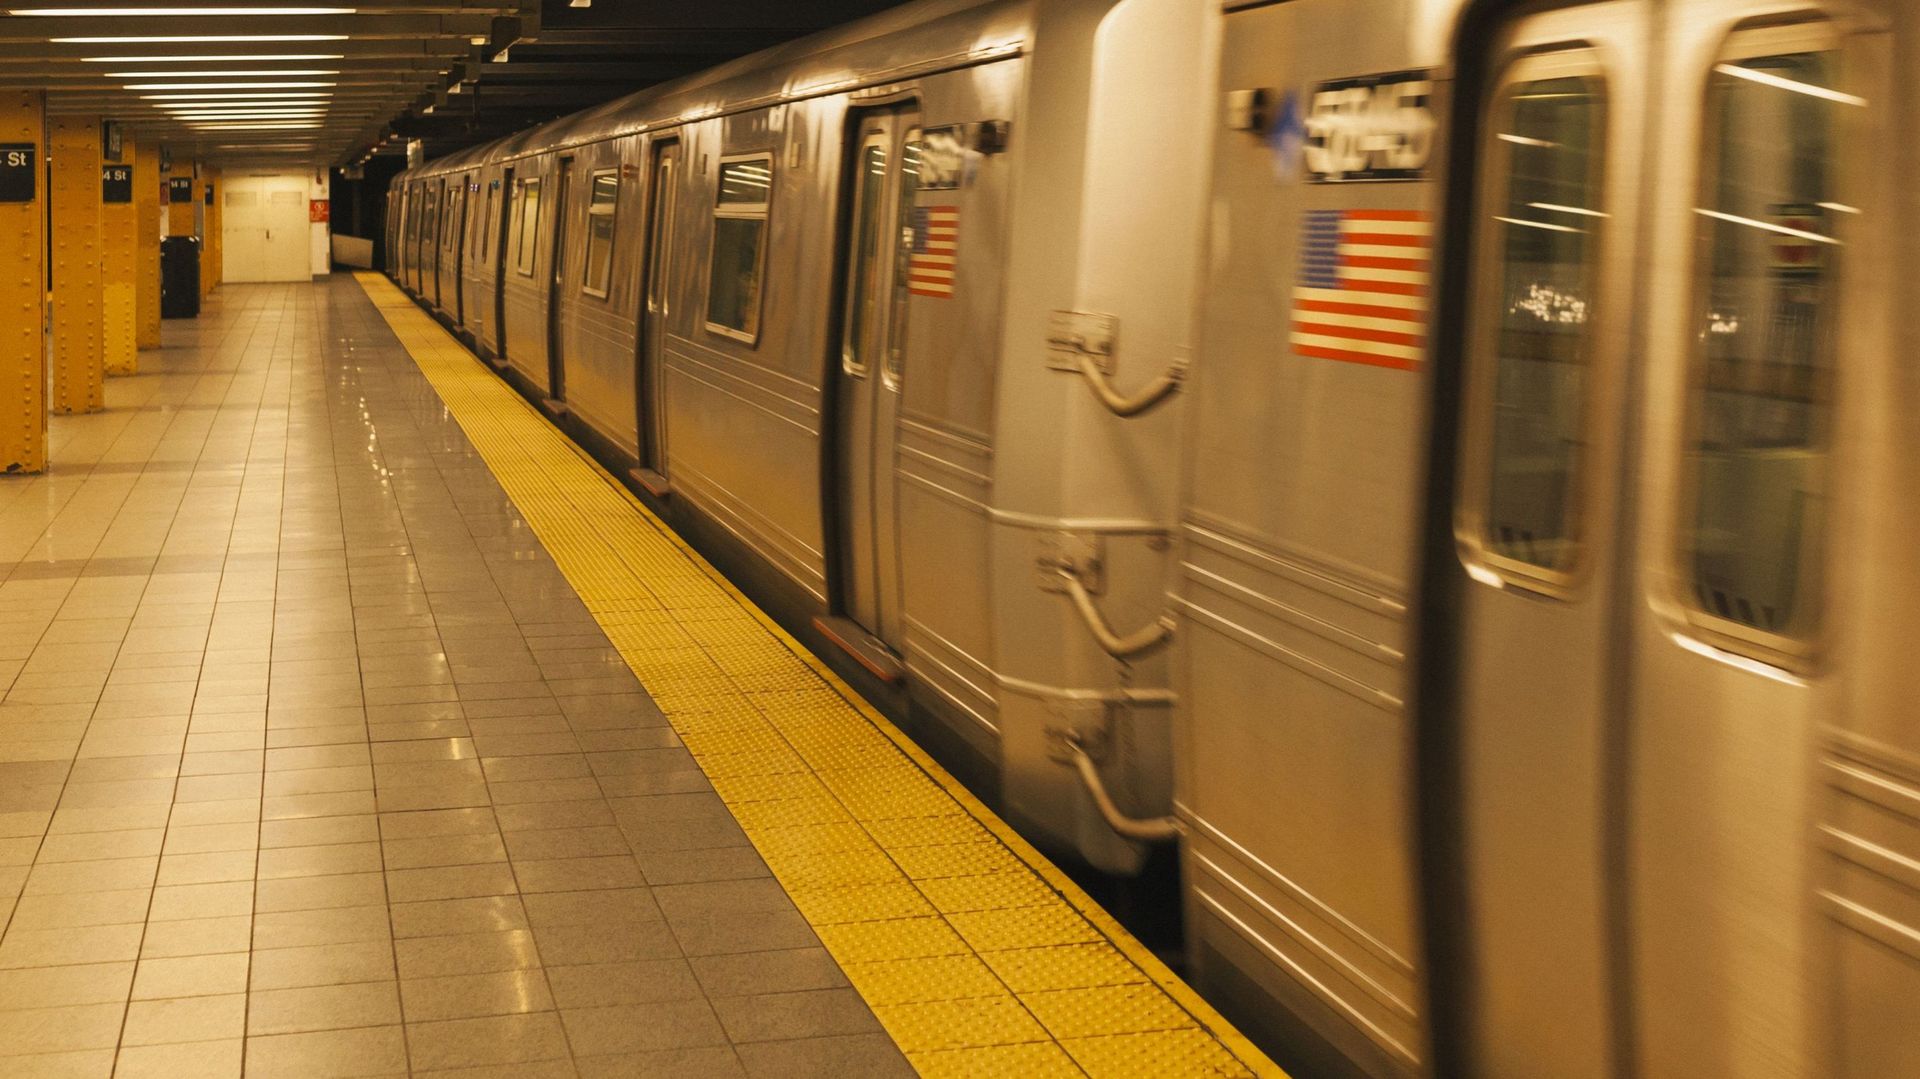 apres-bruxelles-c-est-a-new-york-qu-un-homme-pousse-une-femme-sur-les-rails-du-metro-mais-cette-fois-elle-decede